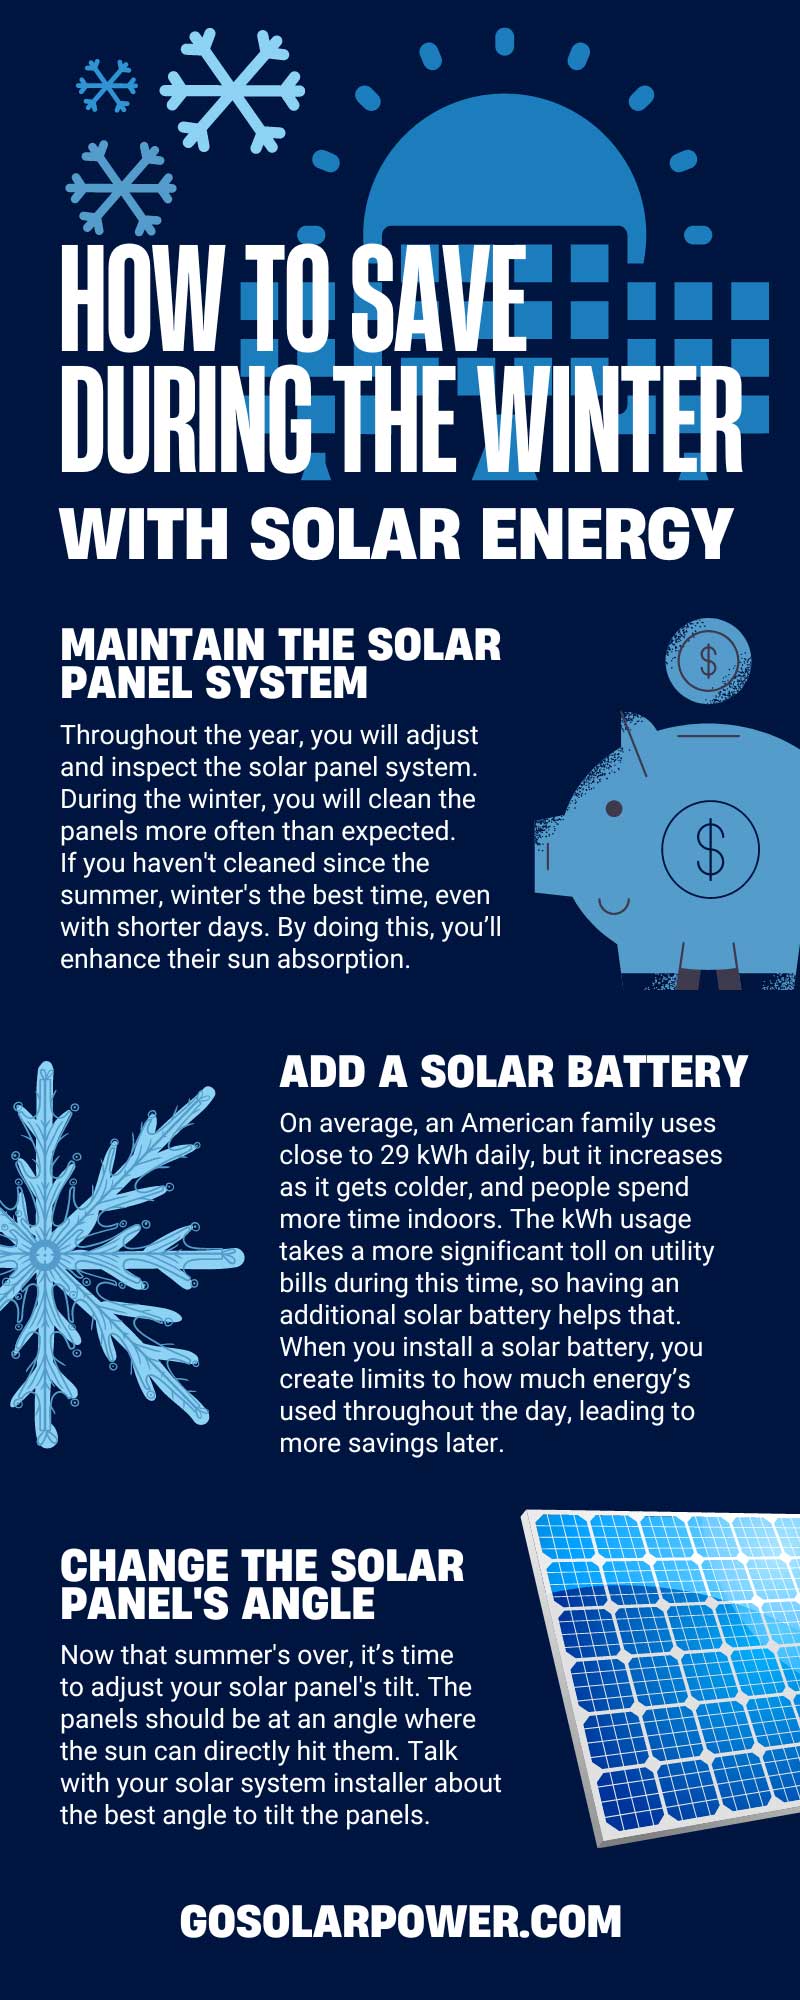 Solar Power Generation in Summer vs. Winter